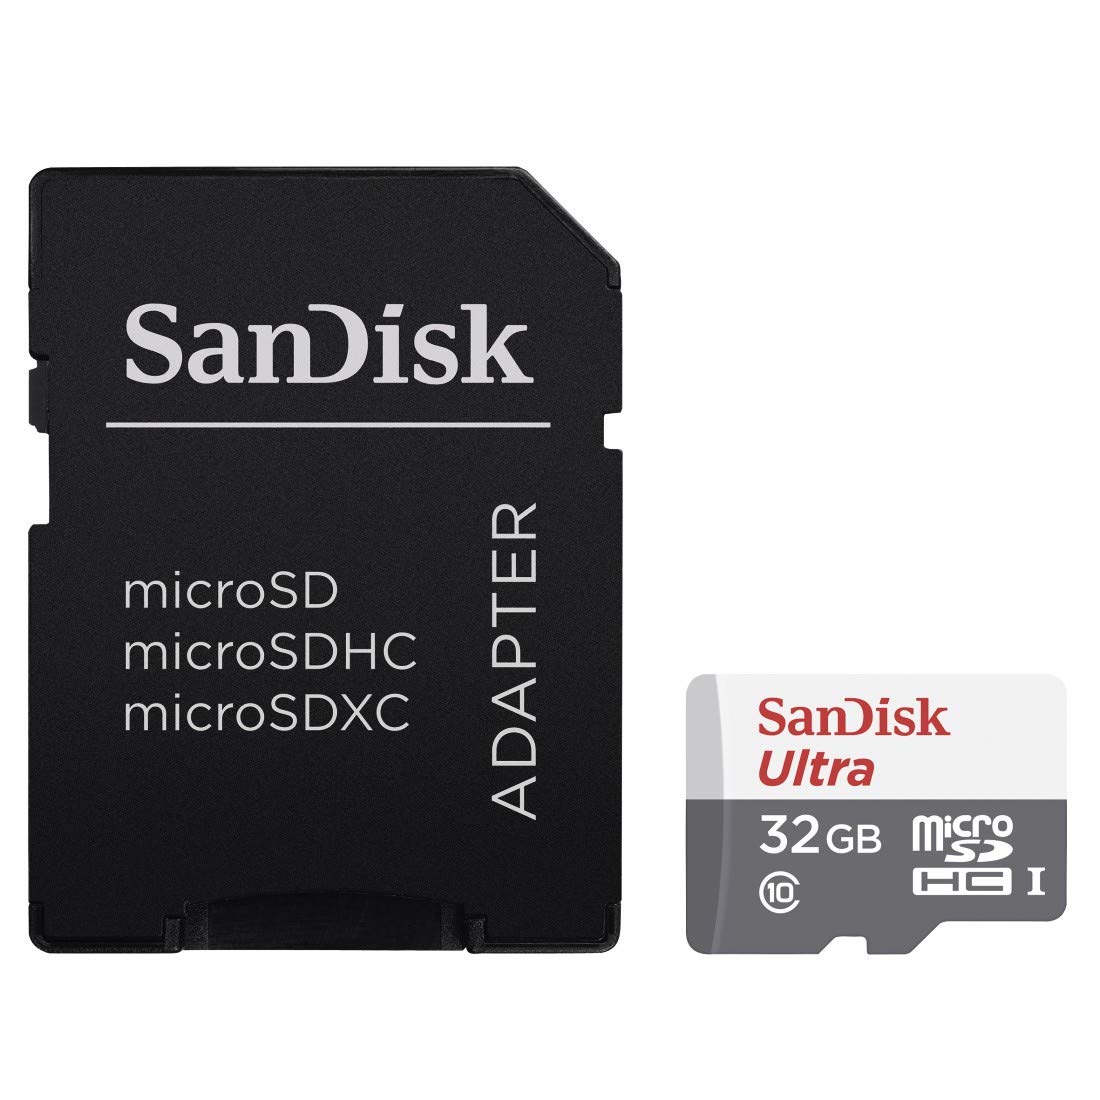 SanDisk Ultra - Carto de memria Flash adaptador microSDXC para SD Includo - 32 GB - UHS-I Class10 - microSDHC UHS-I